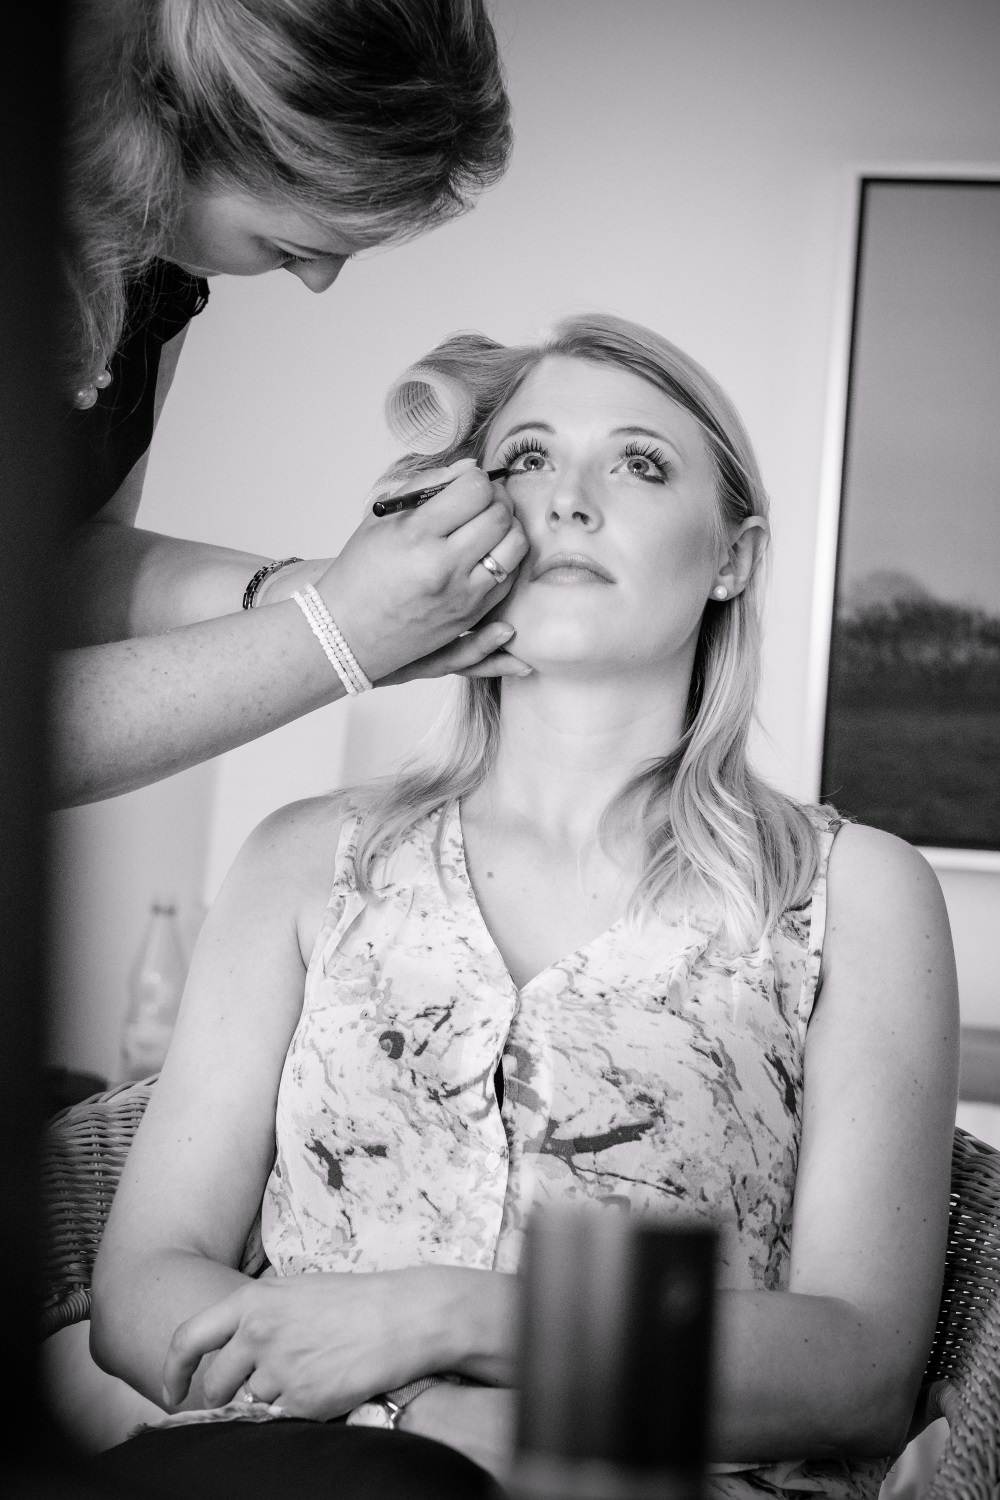 Styling by Julia Dieckmann | Make-up Artist & Hairstylist